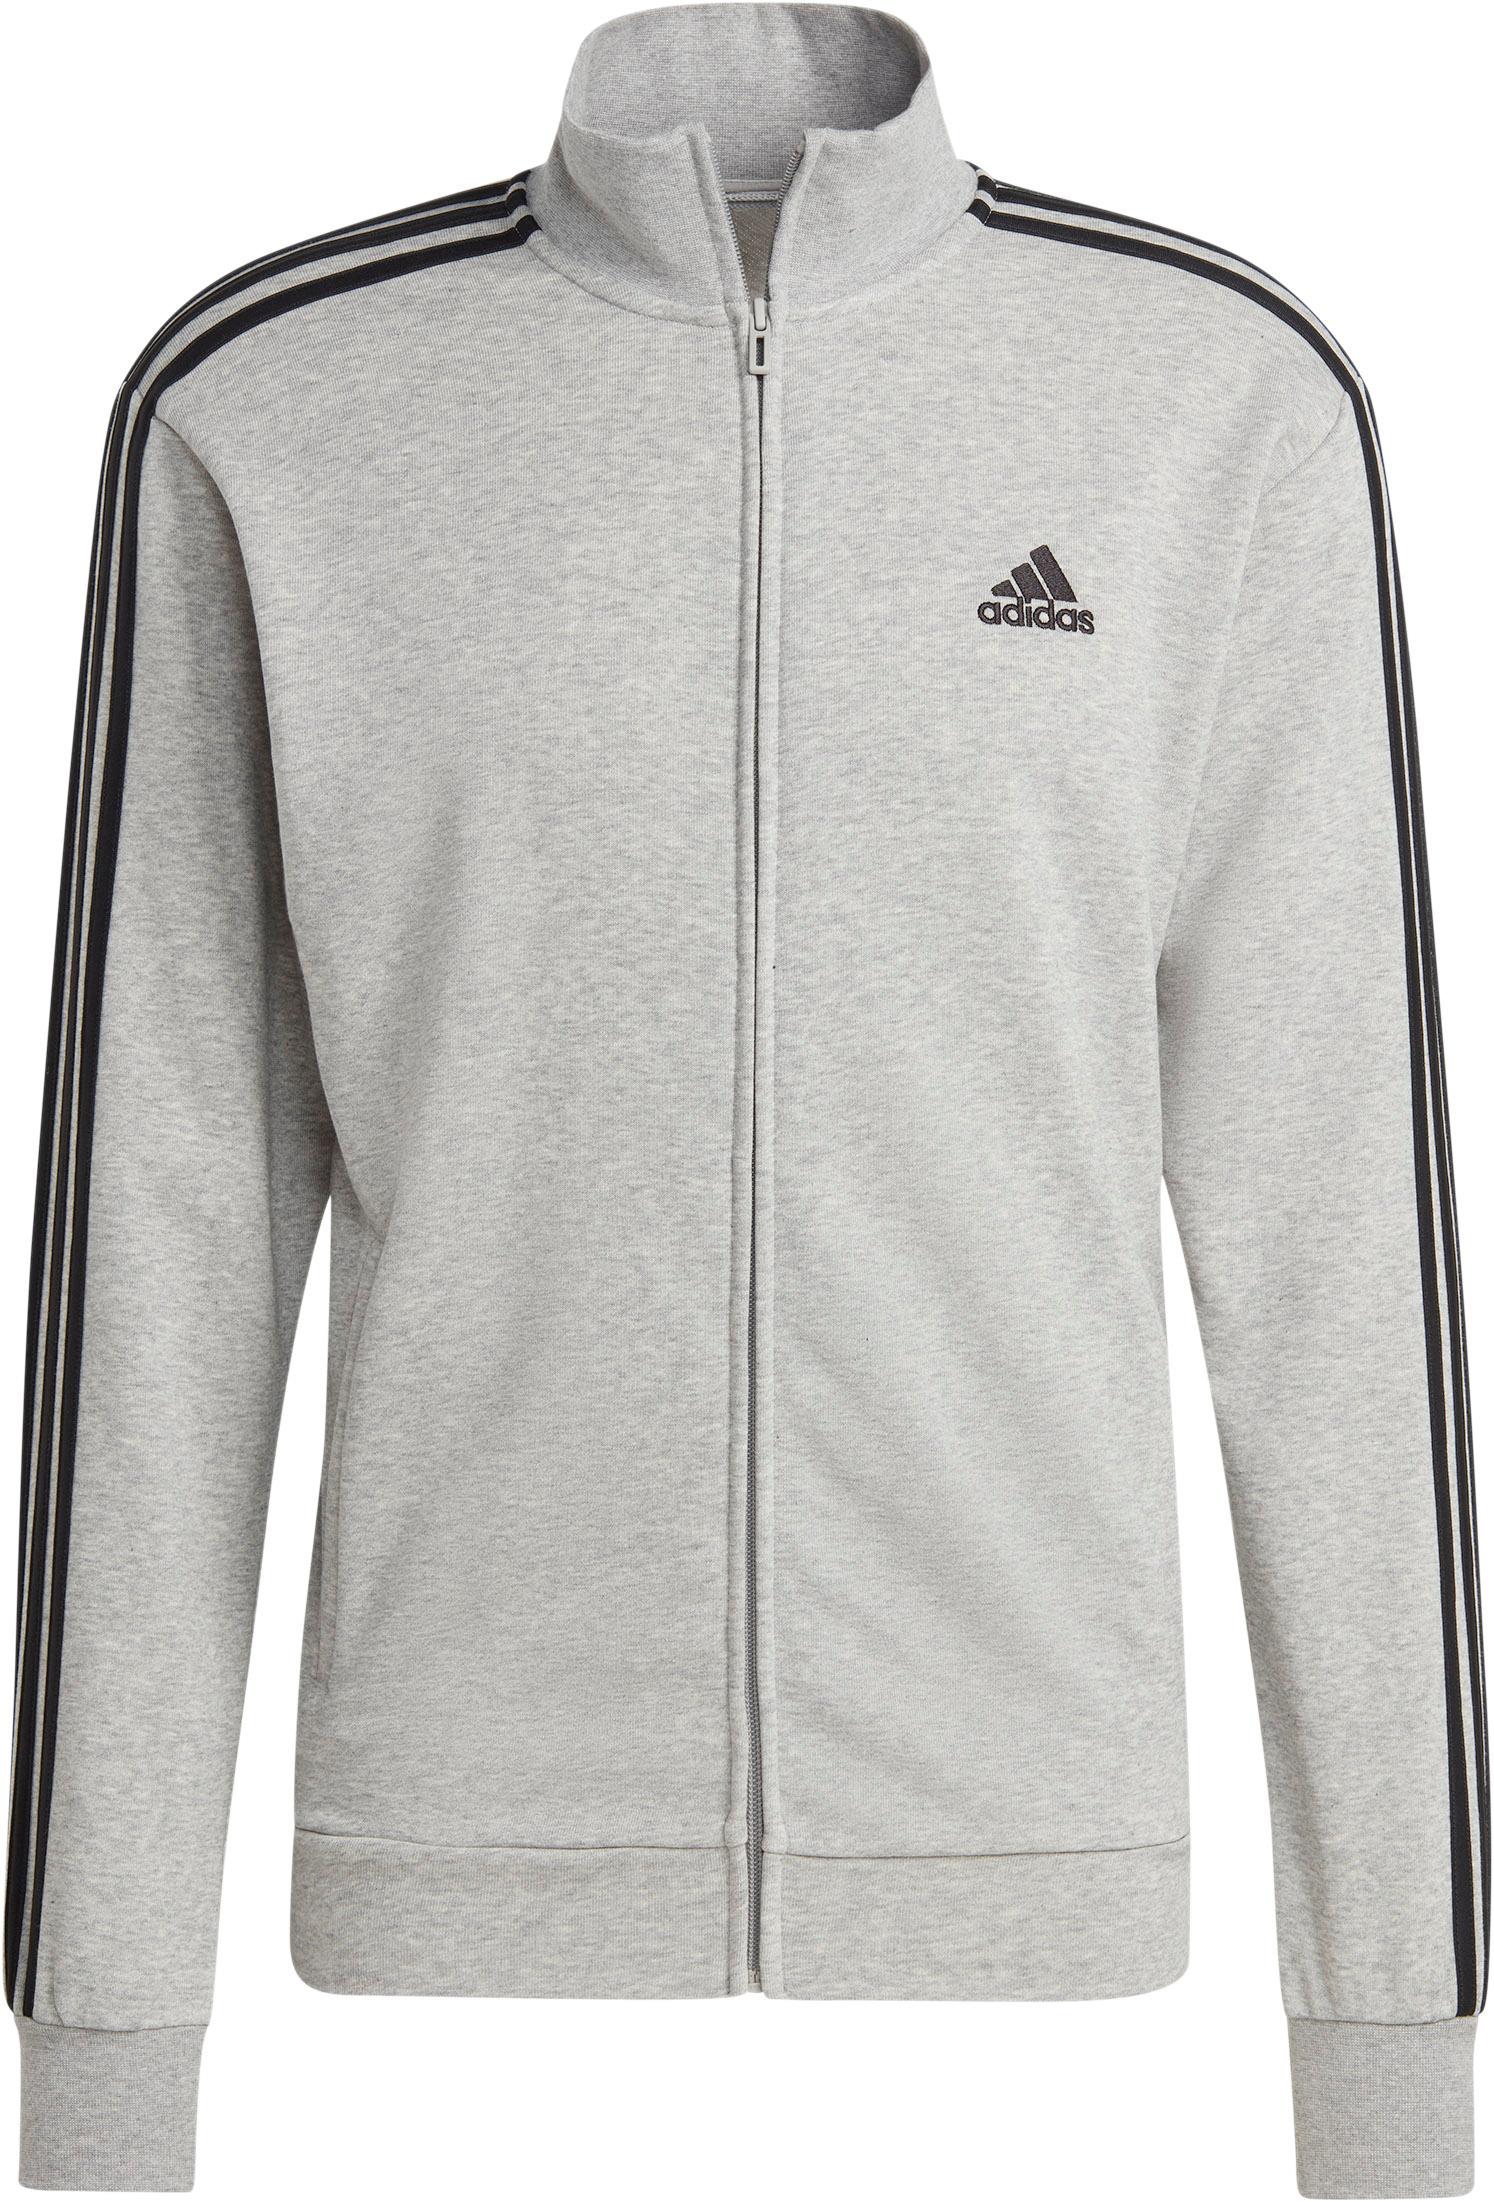 Online heather-black 3-STREIFEN im FRENCH TERRY Trainingsanzug medium BASIC Adidas von grey Shop Herren kaufen SportScheck